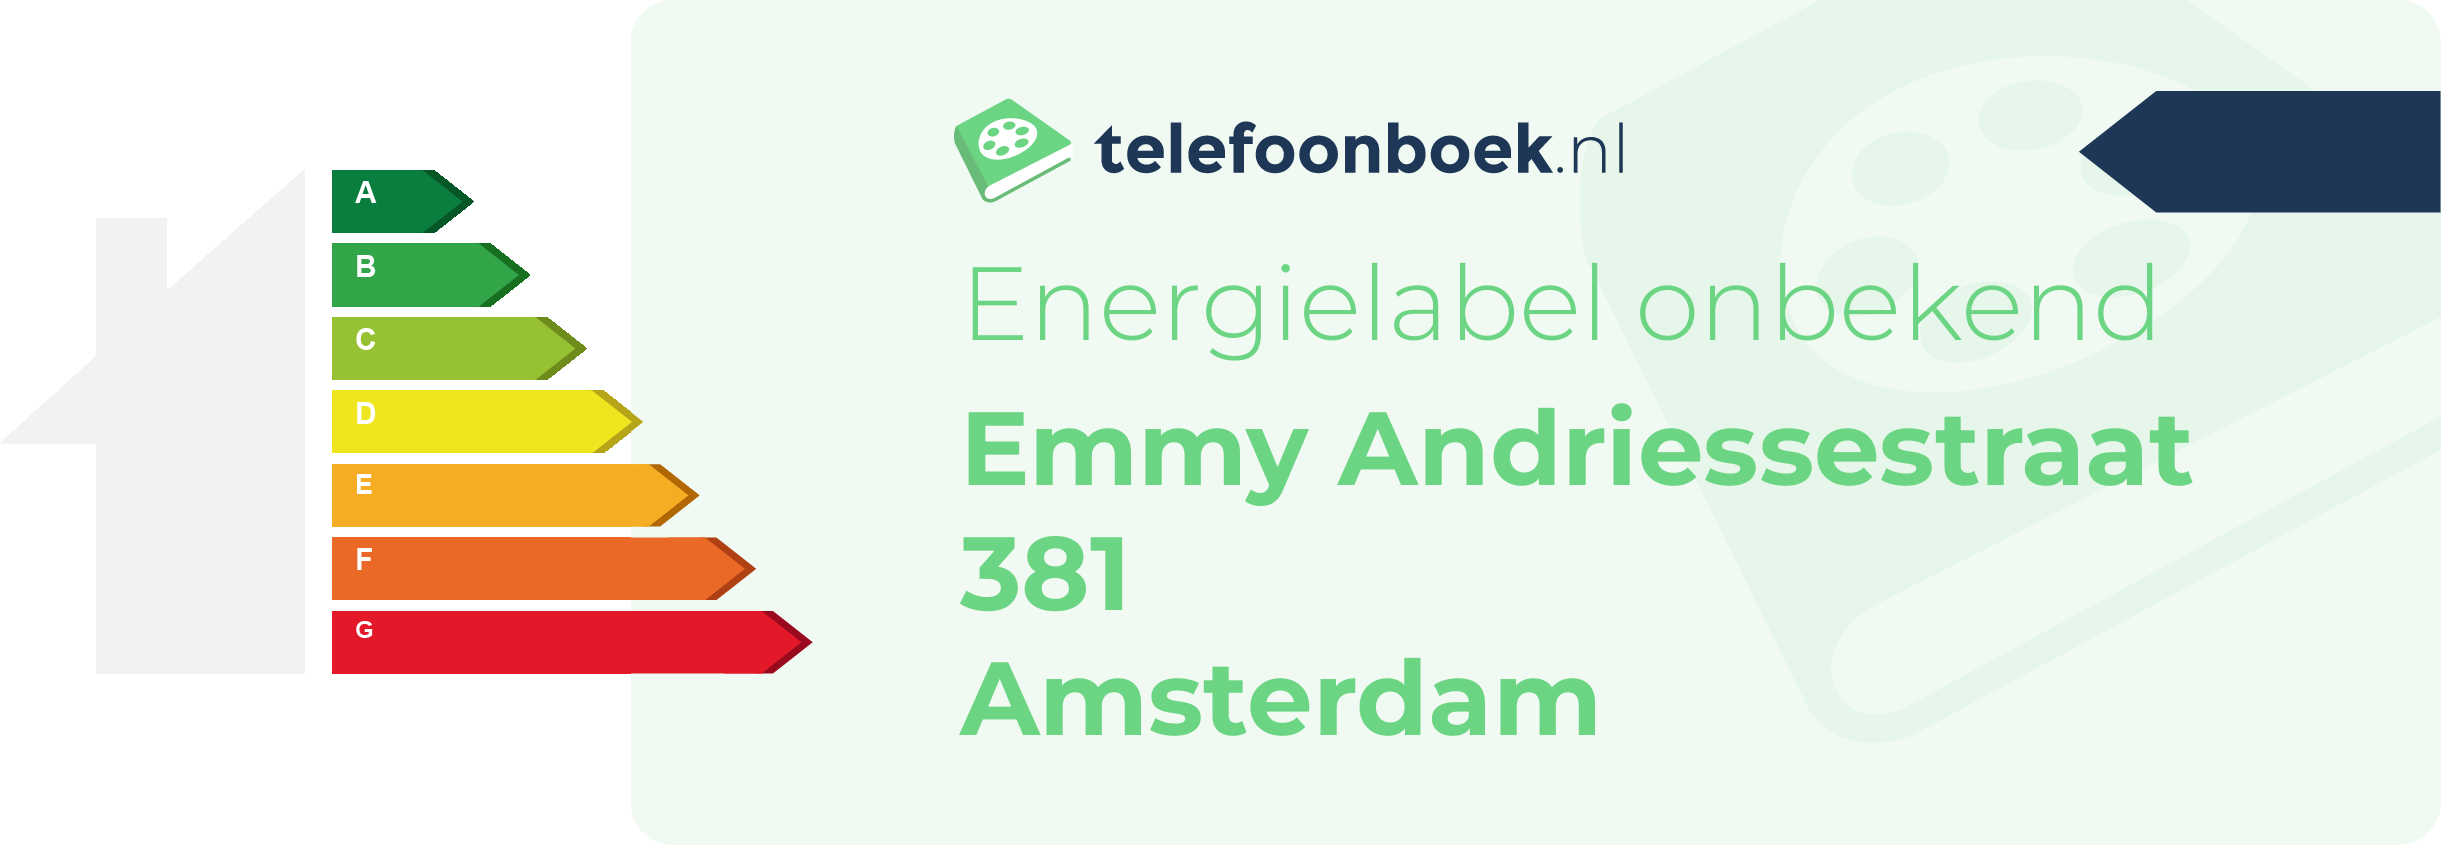 Energielabel Emmy Andriessestraat 381 Amsterdam